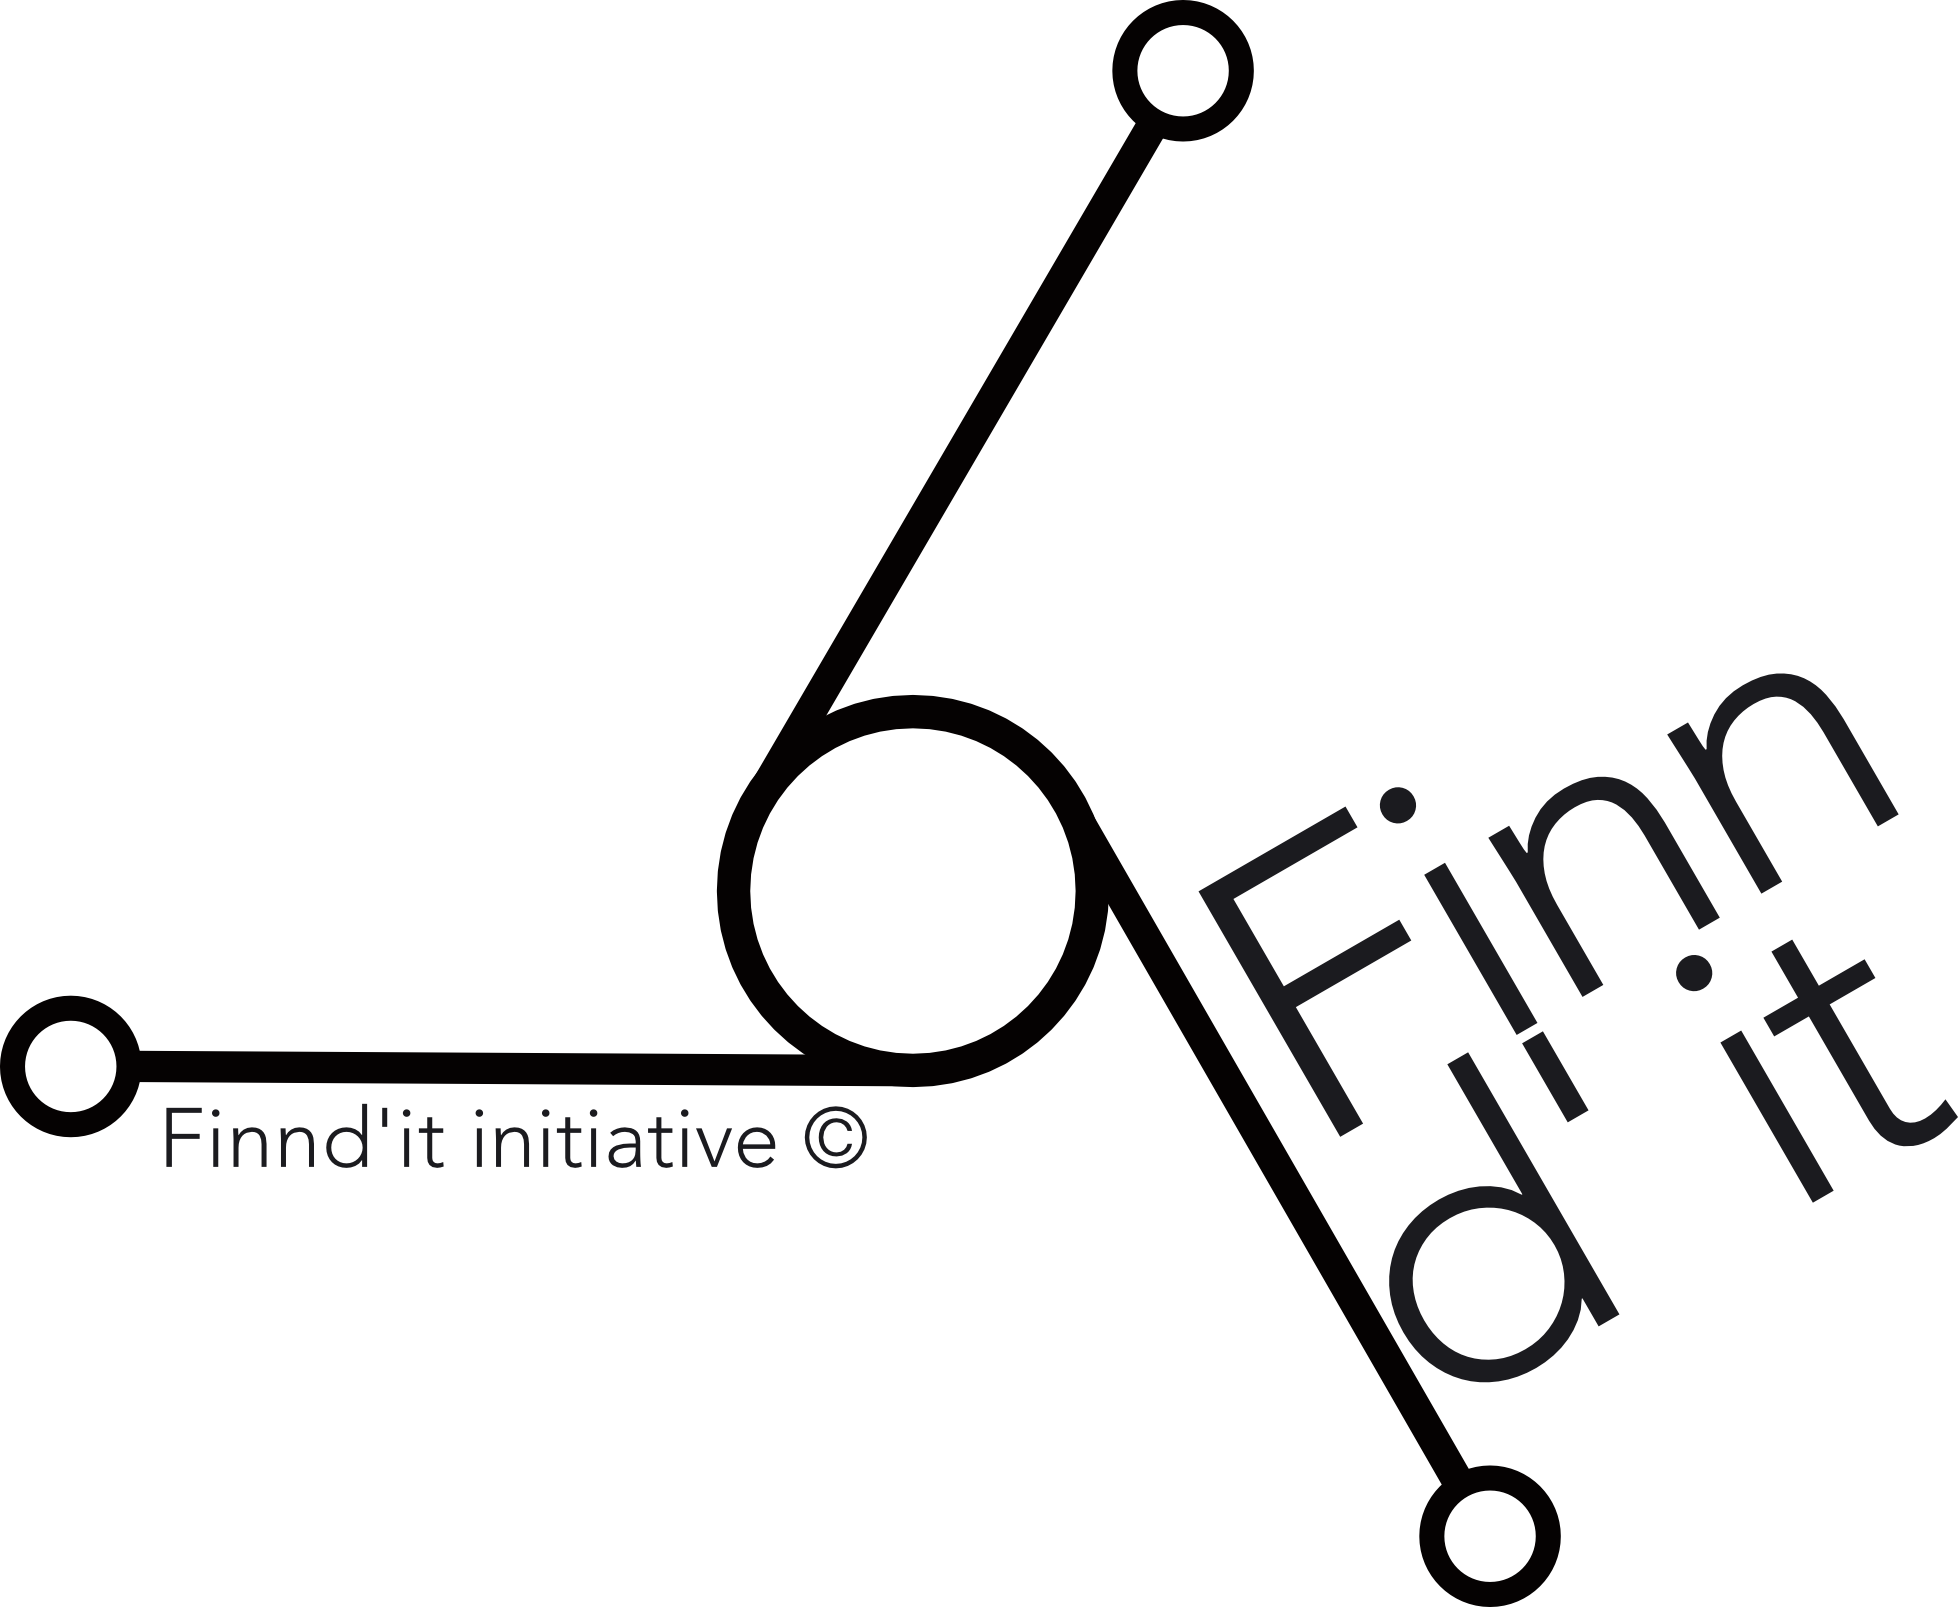 Finndit initiative